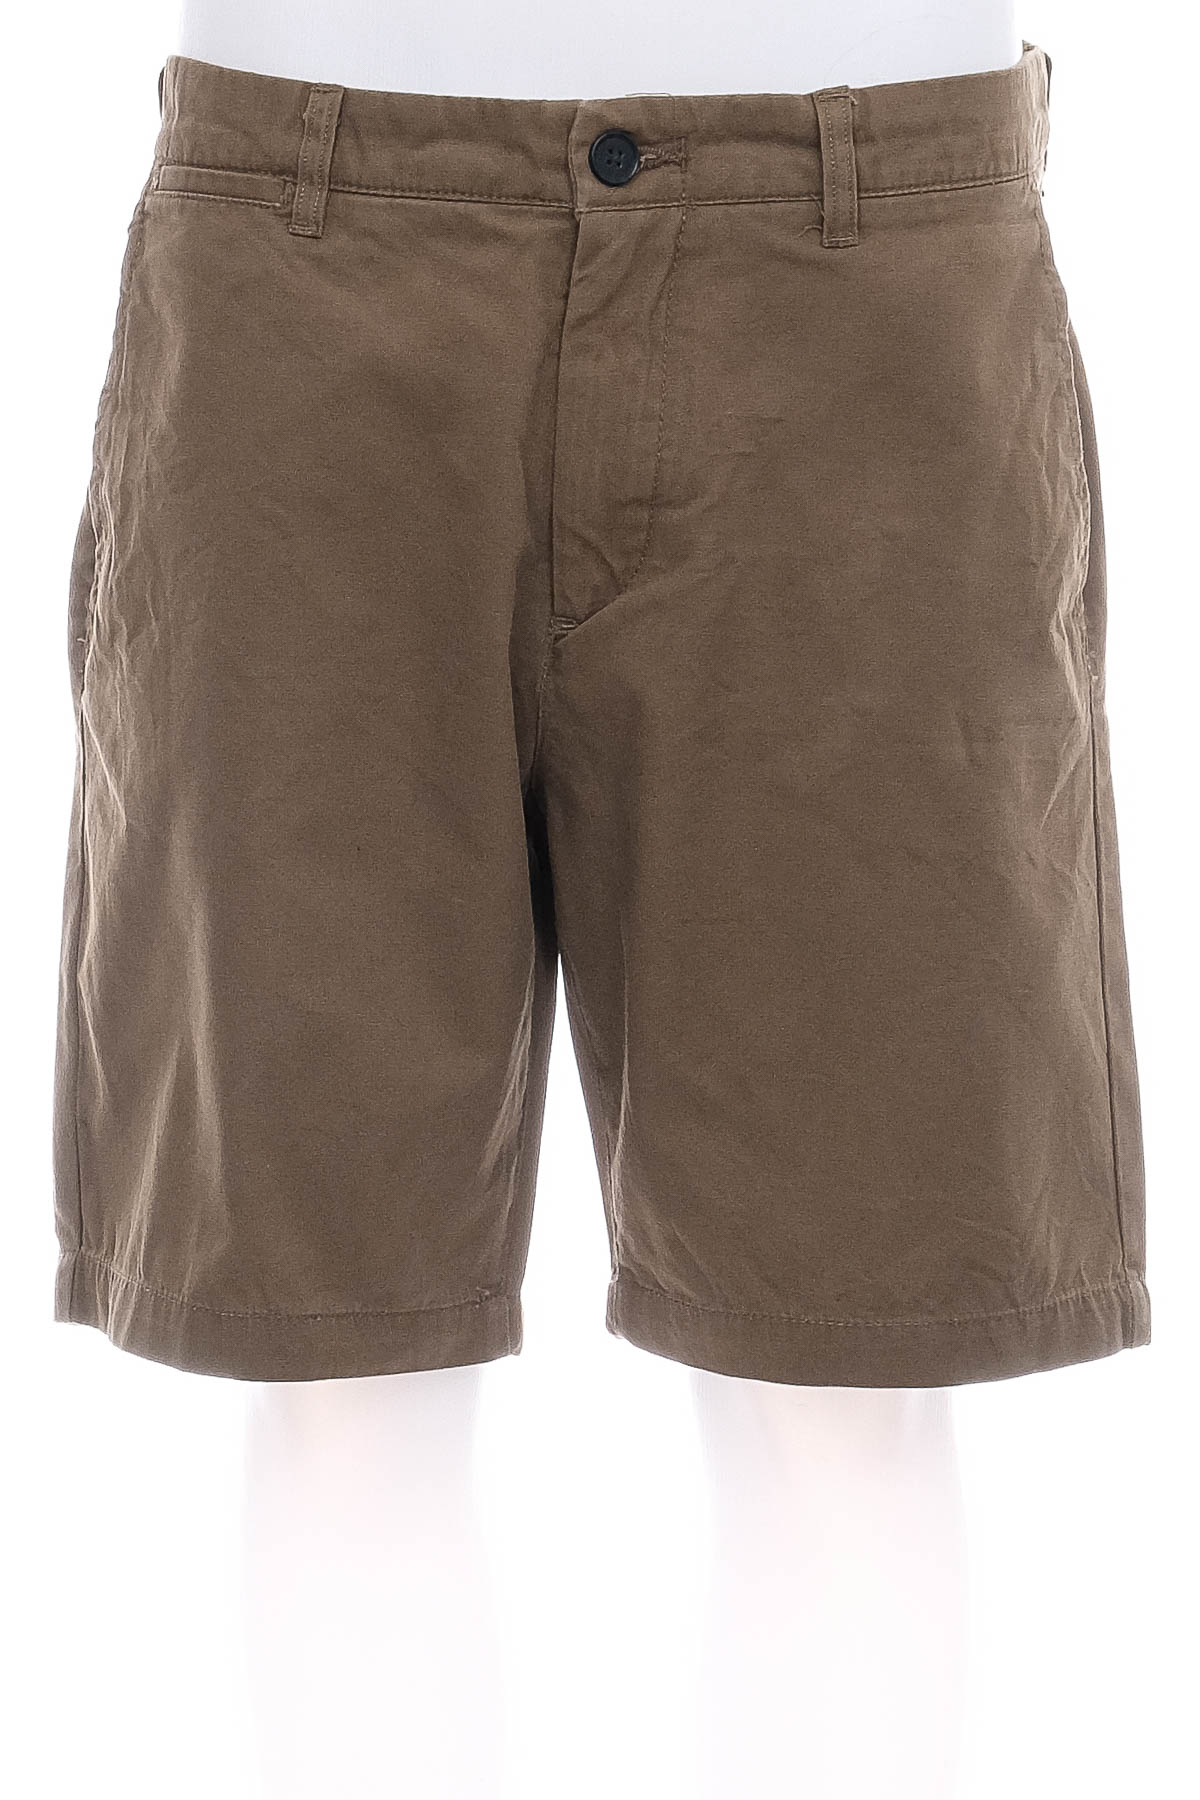 Pantaloni scurți bărbați - H&M - 0